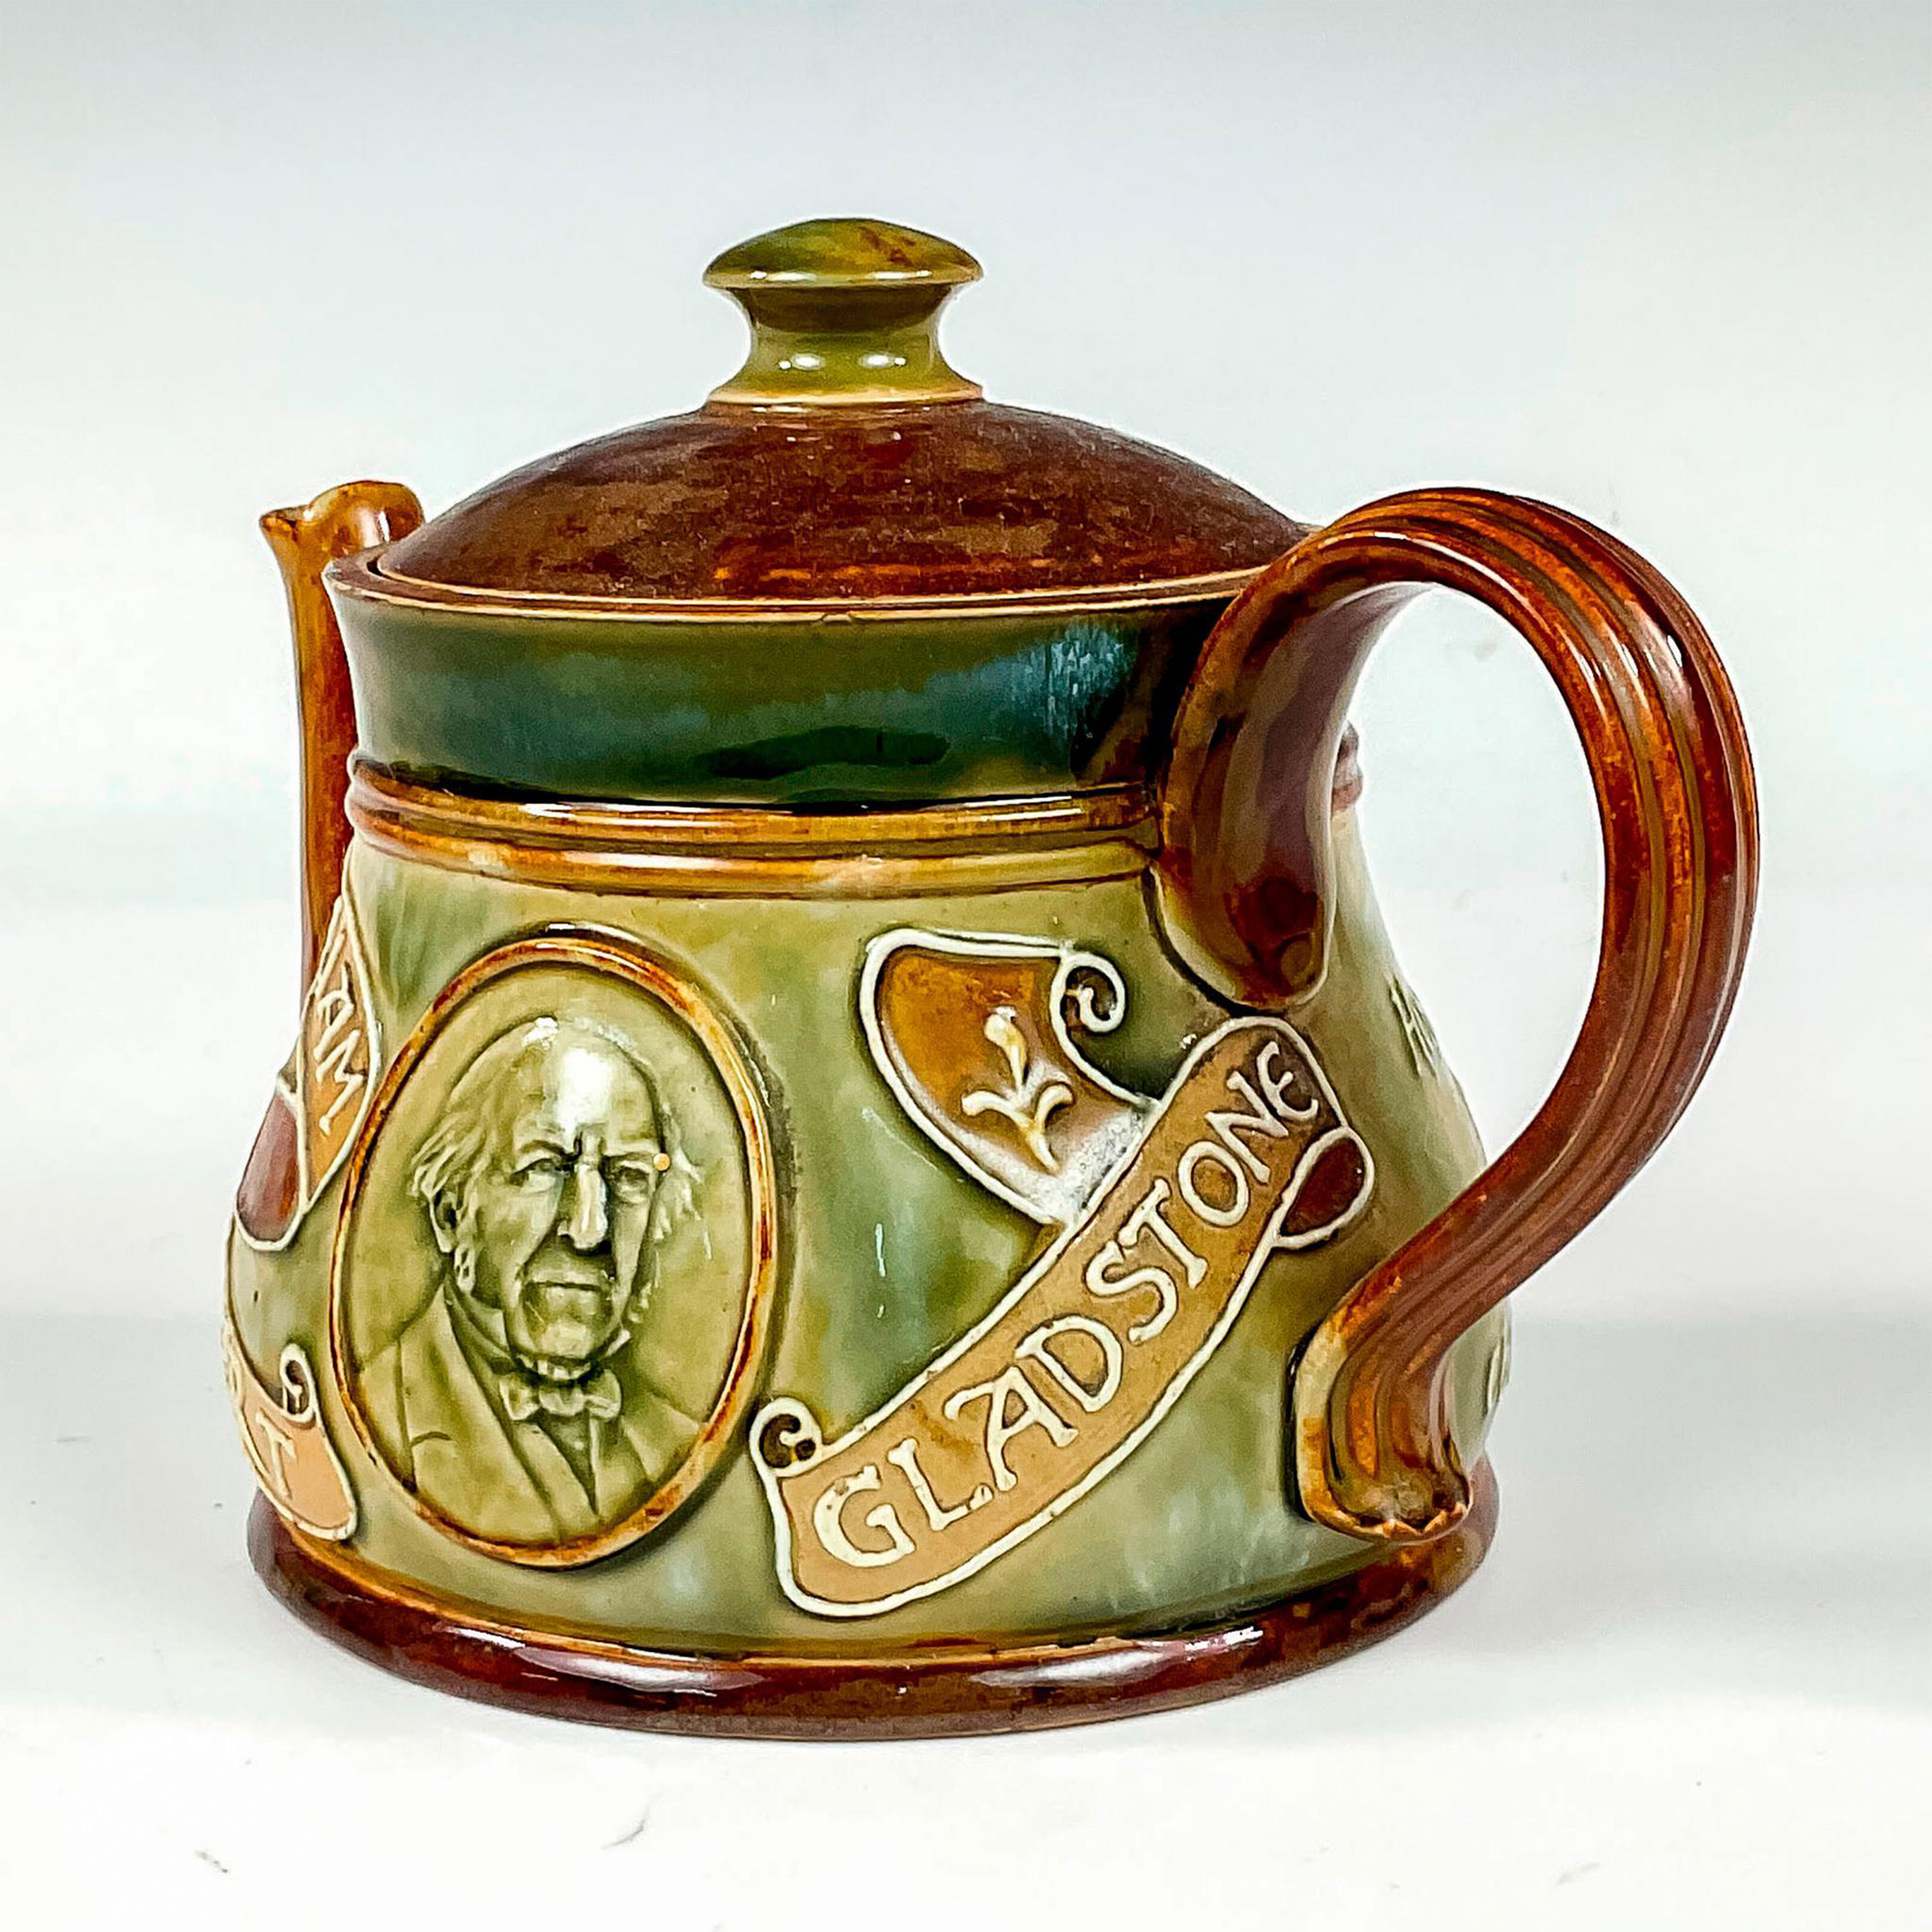 Doulton Lambeth Commemorative Teapot, William E Gladstone - Image 2 of 4